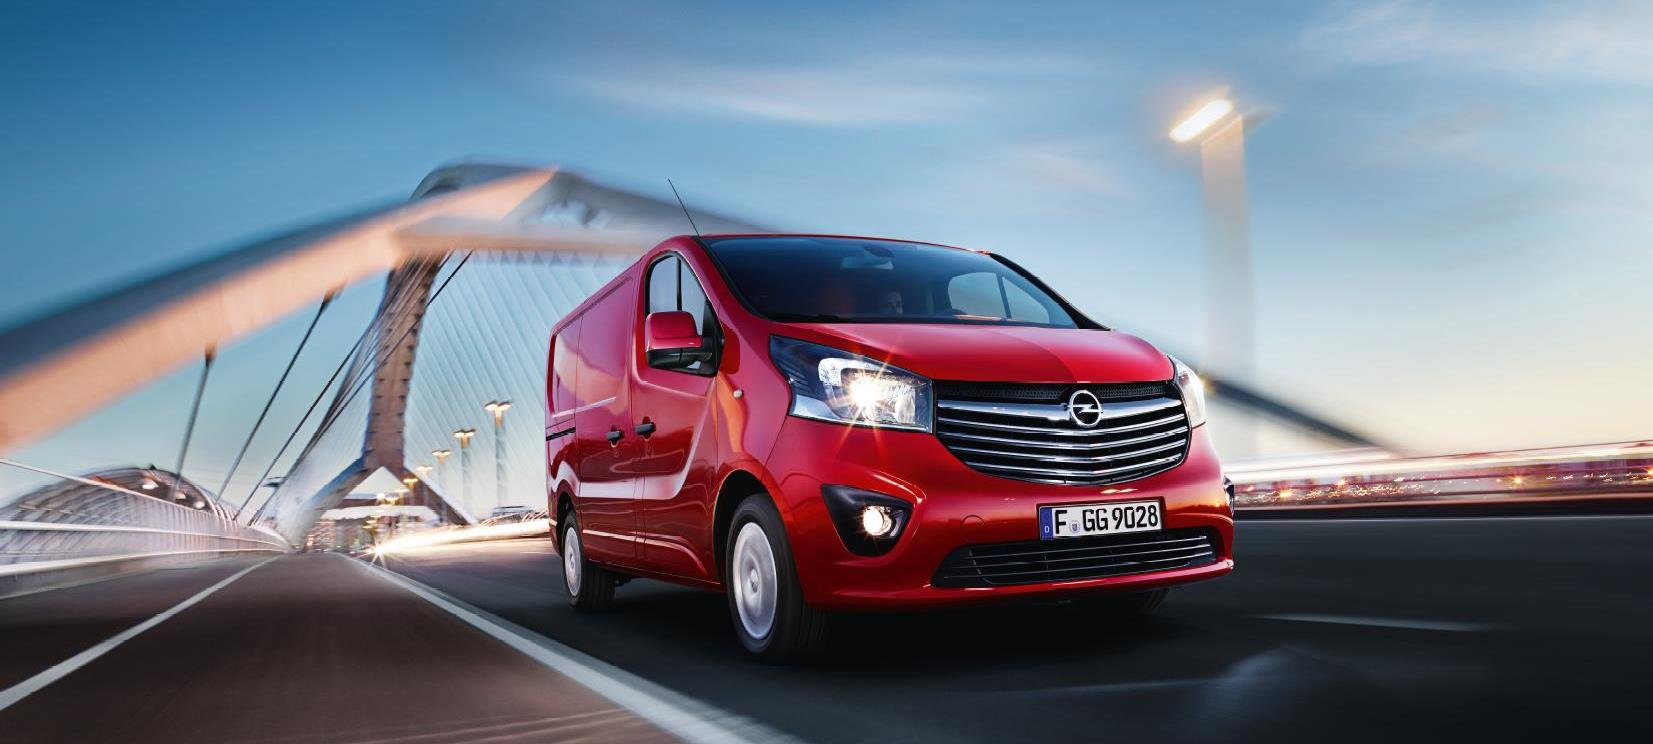 OPEL Vivaro Van již za 431 200 Kč Váš užitkový vůz Opel = Vaše výhoda * Opel FlexCare Záruka BASIC 5 let anebo 150 000 km (2 roky komplet + 3 roky motor, rozvodovka, převodovka) Opel Assistance úplná